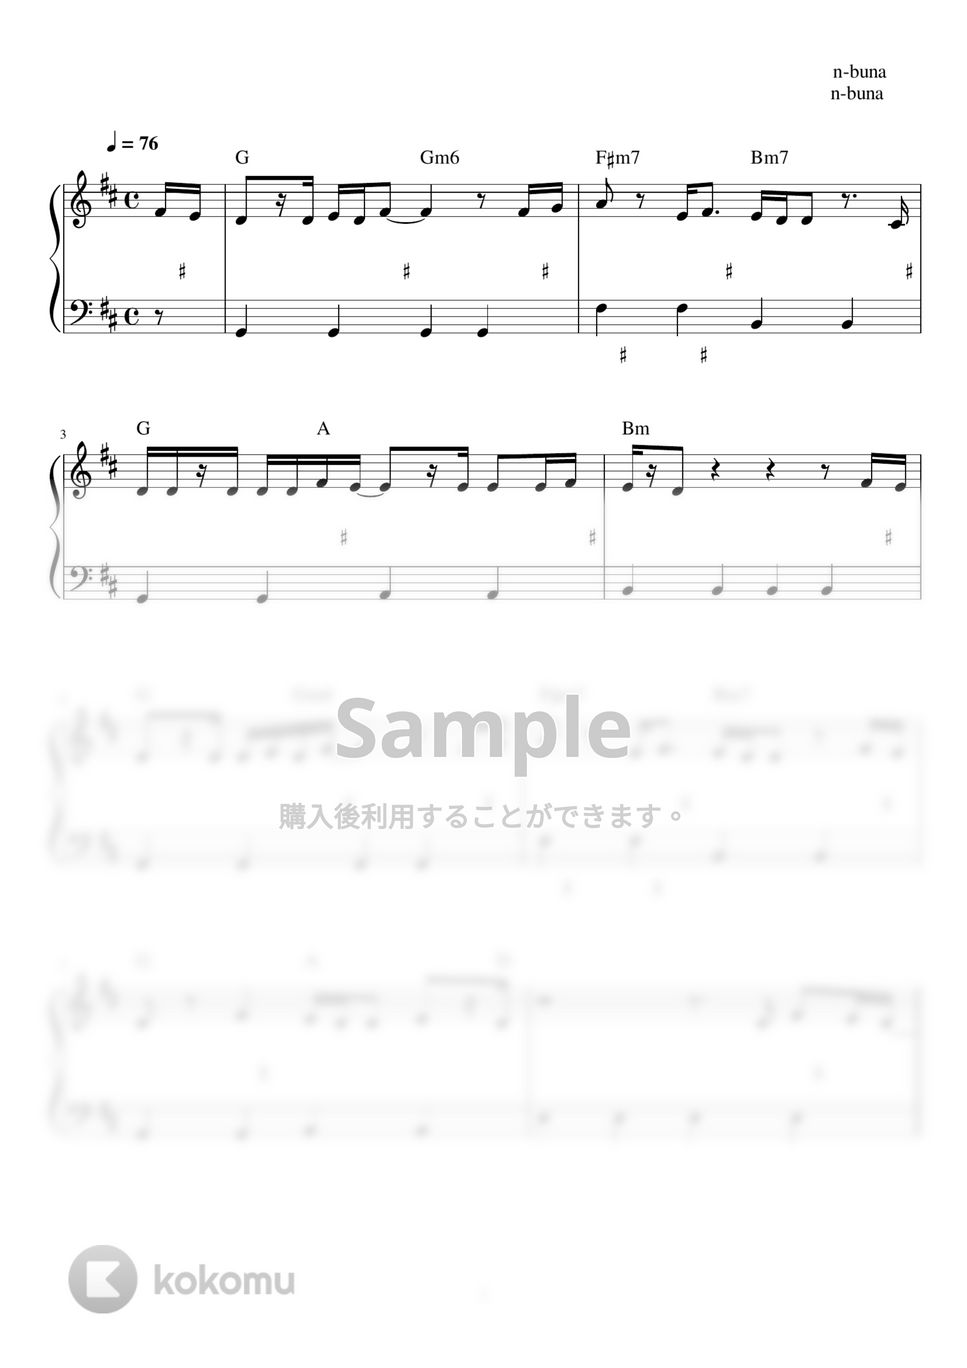 ヨルシカ - 左右盲 (ピアノ楽譜 / かんたん両手 / 歌詞付き / ドレミ付き / 初心者向き) by piano.tokyo